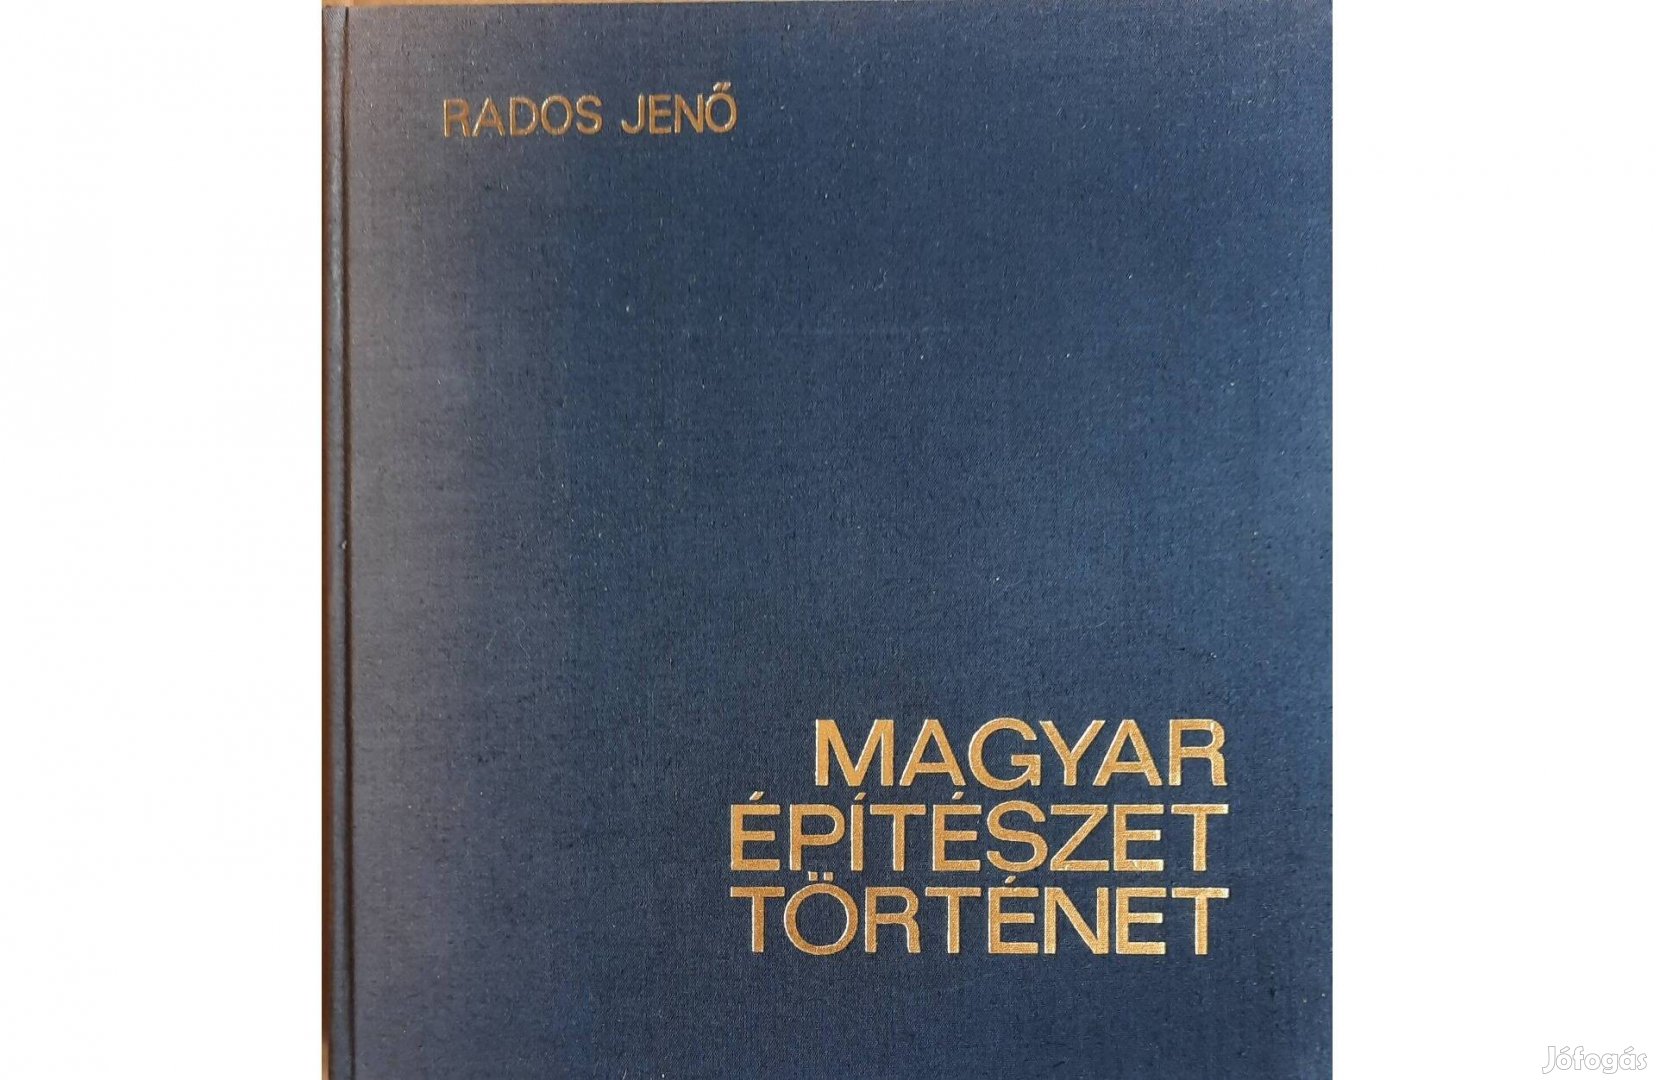 Magyar építészettörténet című könyv eladó